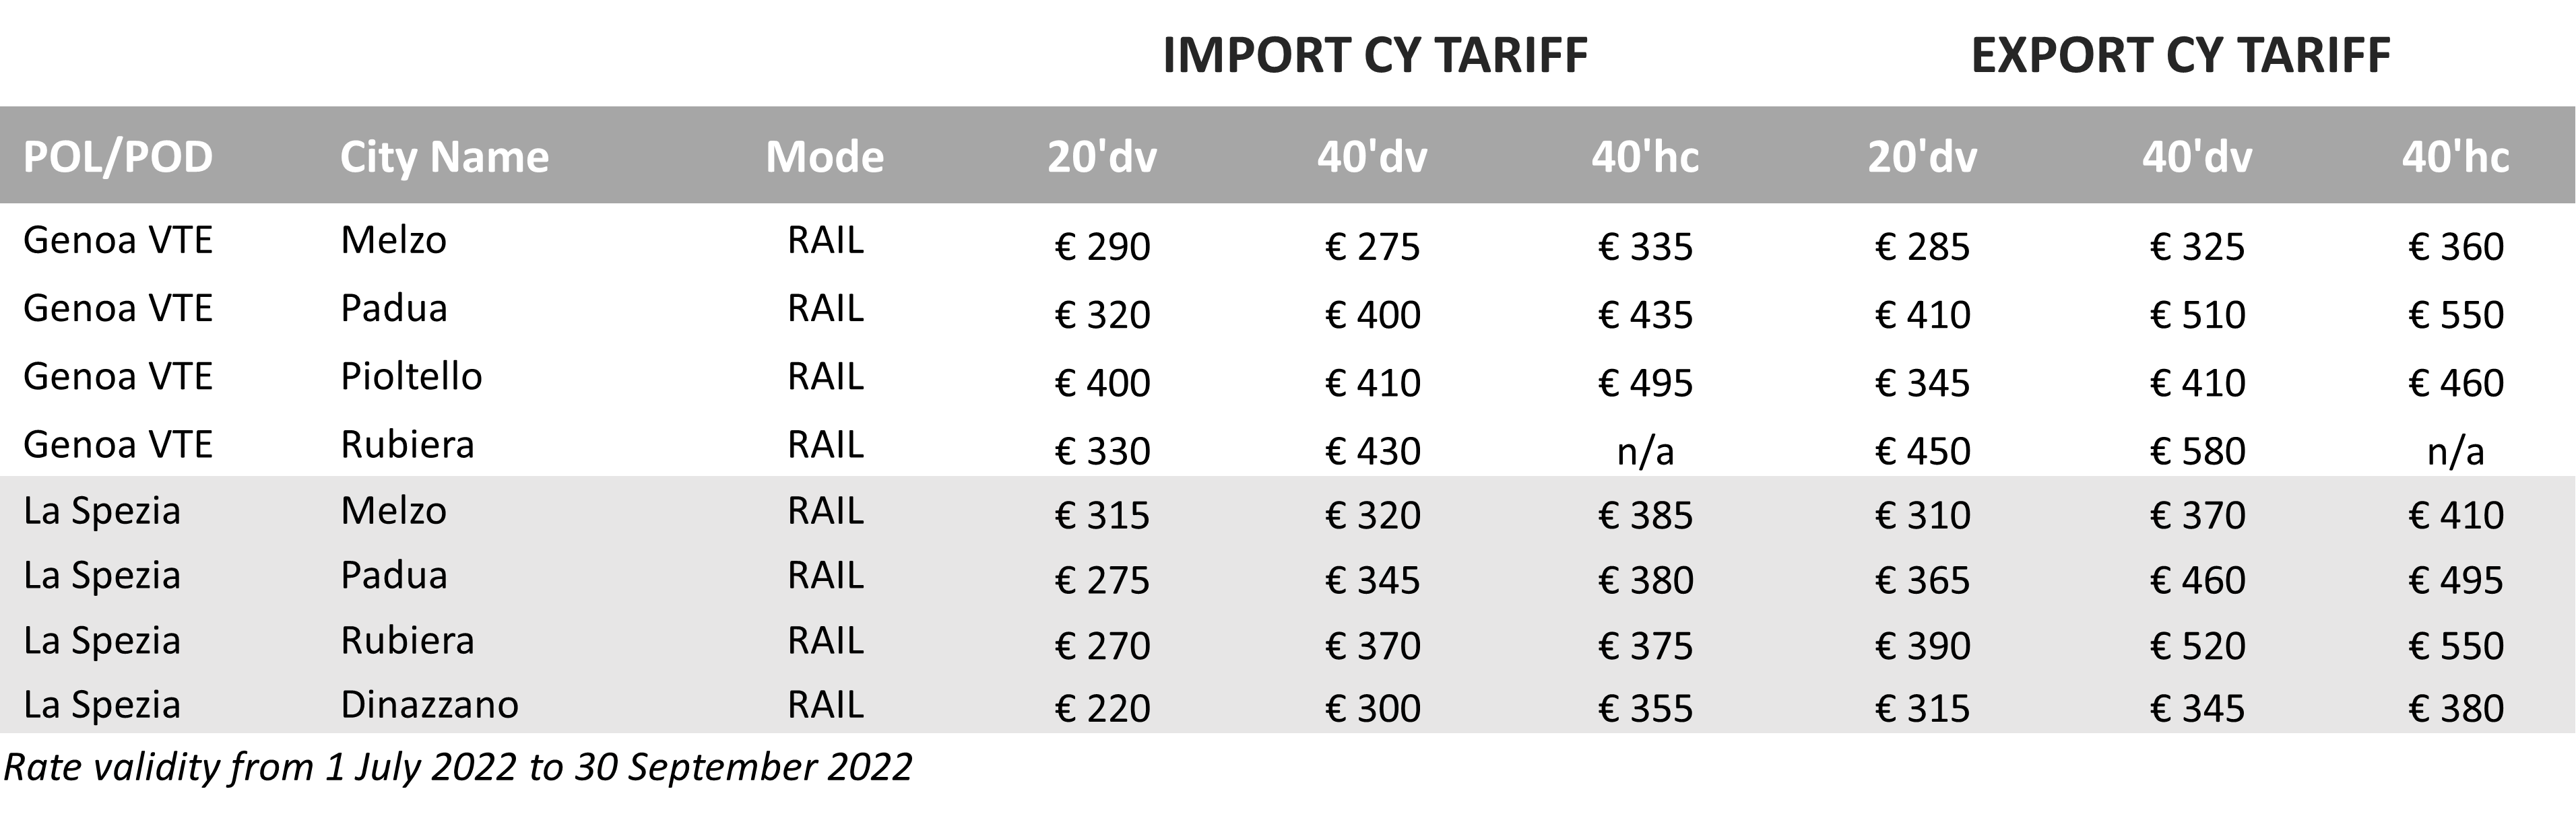 CY Tariff - 2022Q3 - IT